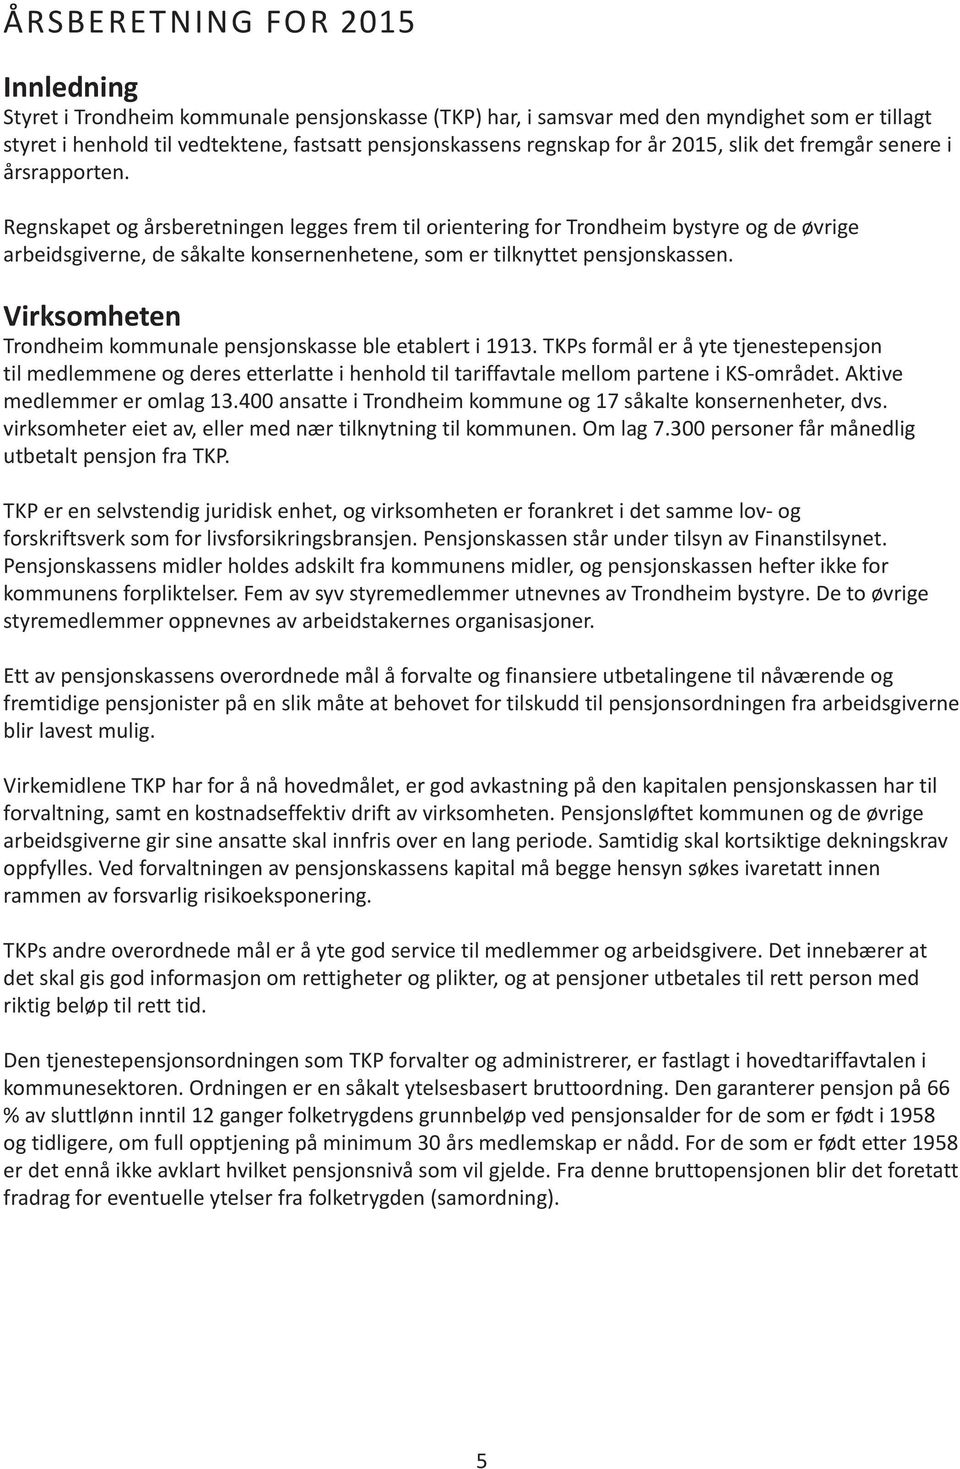 Regnskapet og årsberetningen legges frem til orientering for Trondheim bystyre og de øvrige arbeidsgiverne, de såkalte konsernenhetene, som er tilknyttet pensjonskassen.